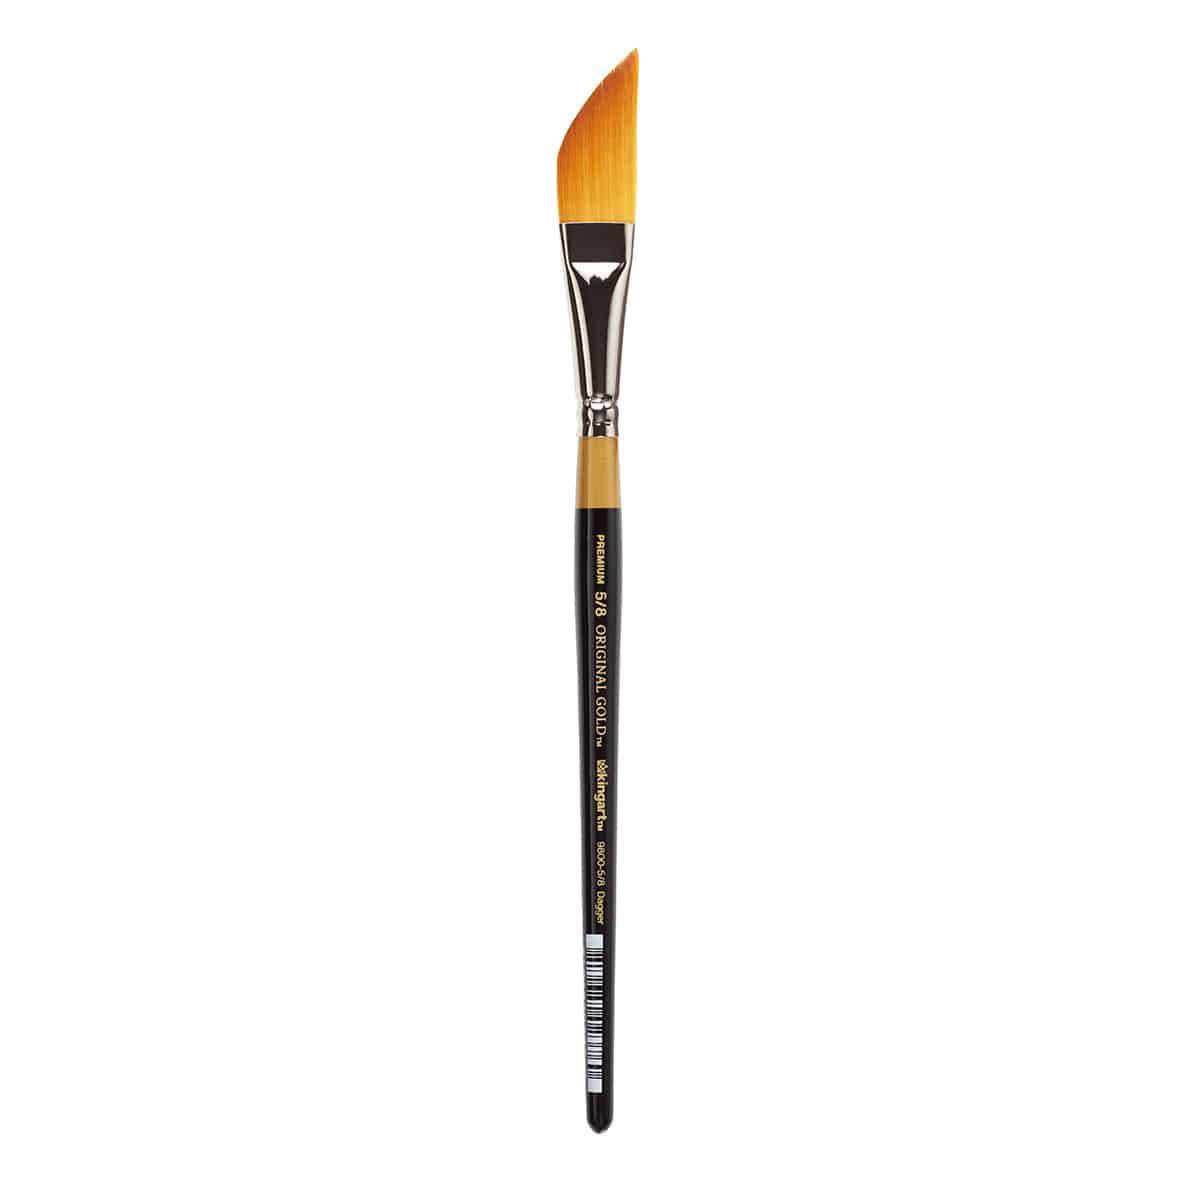 KINGART® Golden Nylon Brushes, Set of 12 in Travel Case